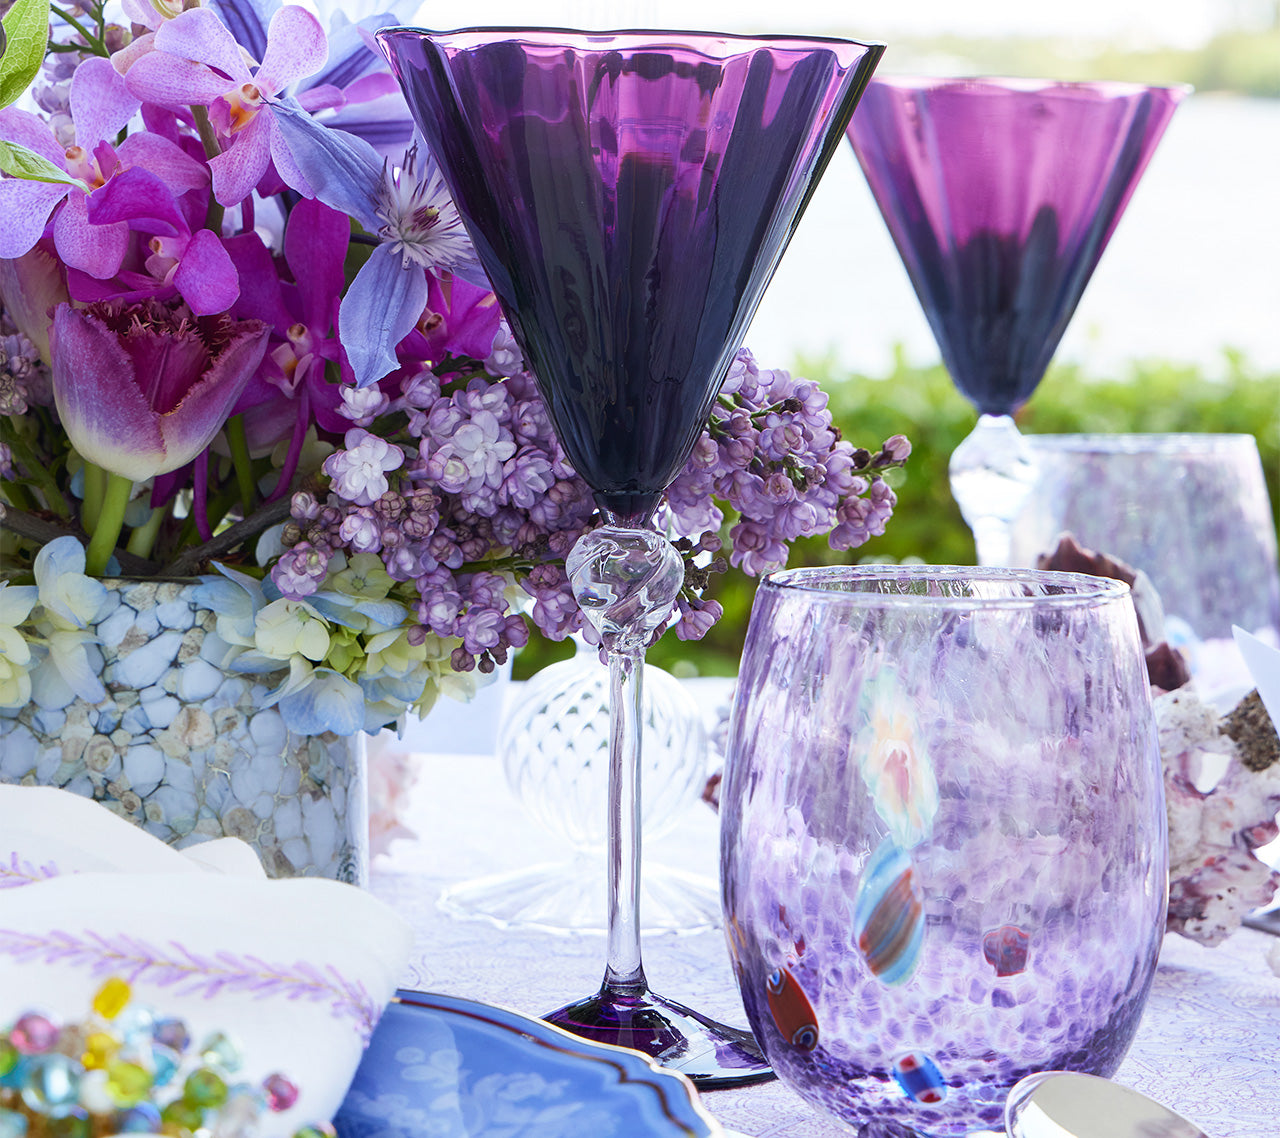 Kim Seybert Luxury Daphne Wine Glass in Amethyst